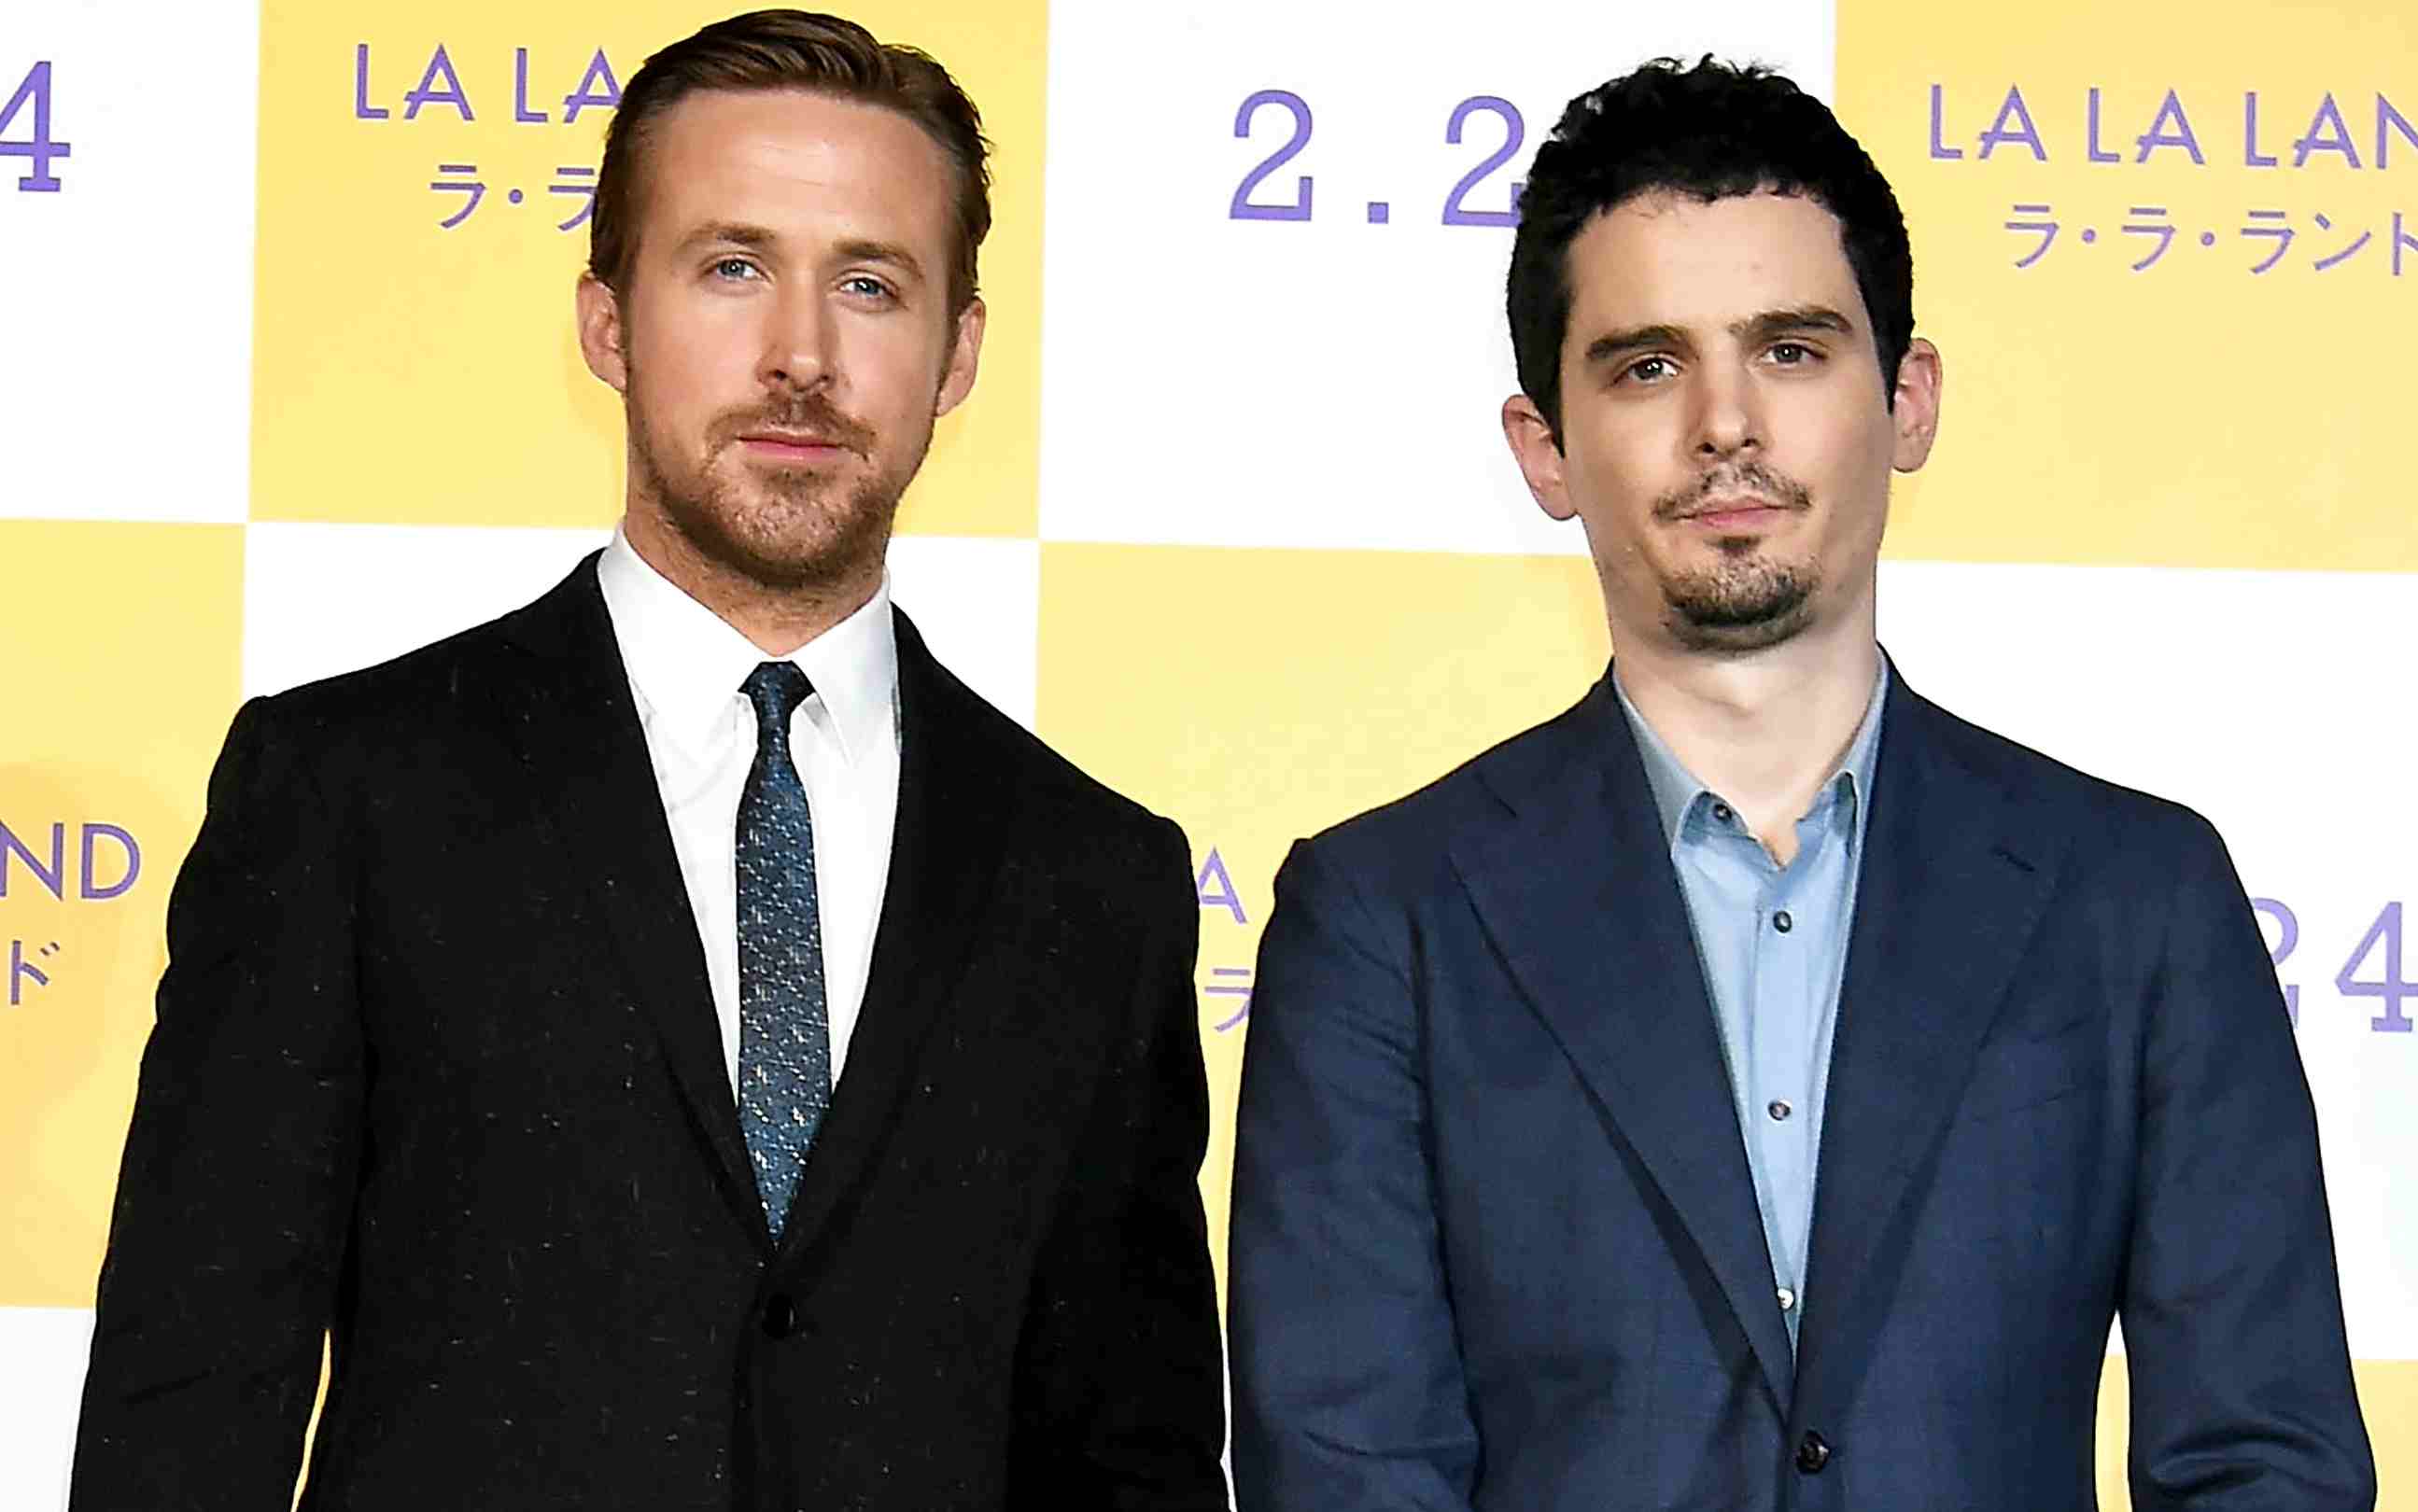 el sumario - La película dirigida por Damian Chazelle y protagonizada por Ryan Gosling será la encargada de la inauguración de evento